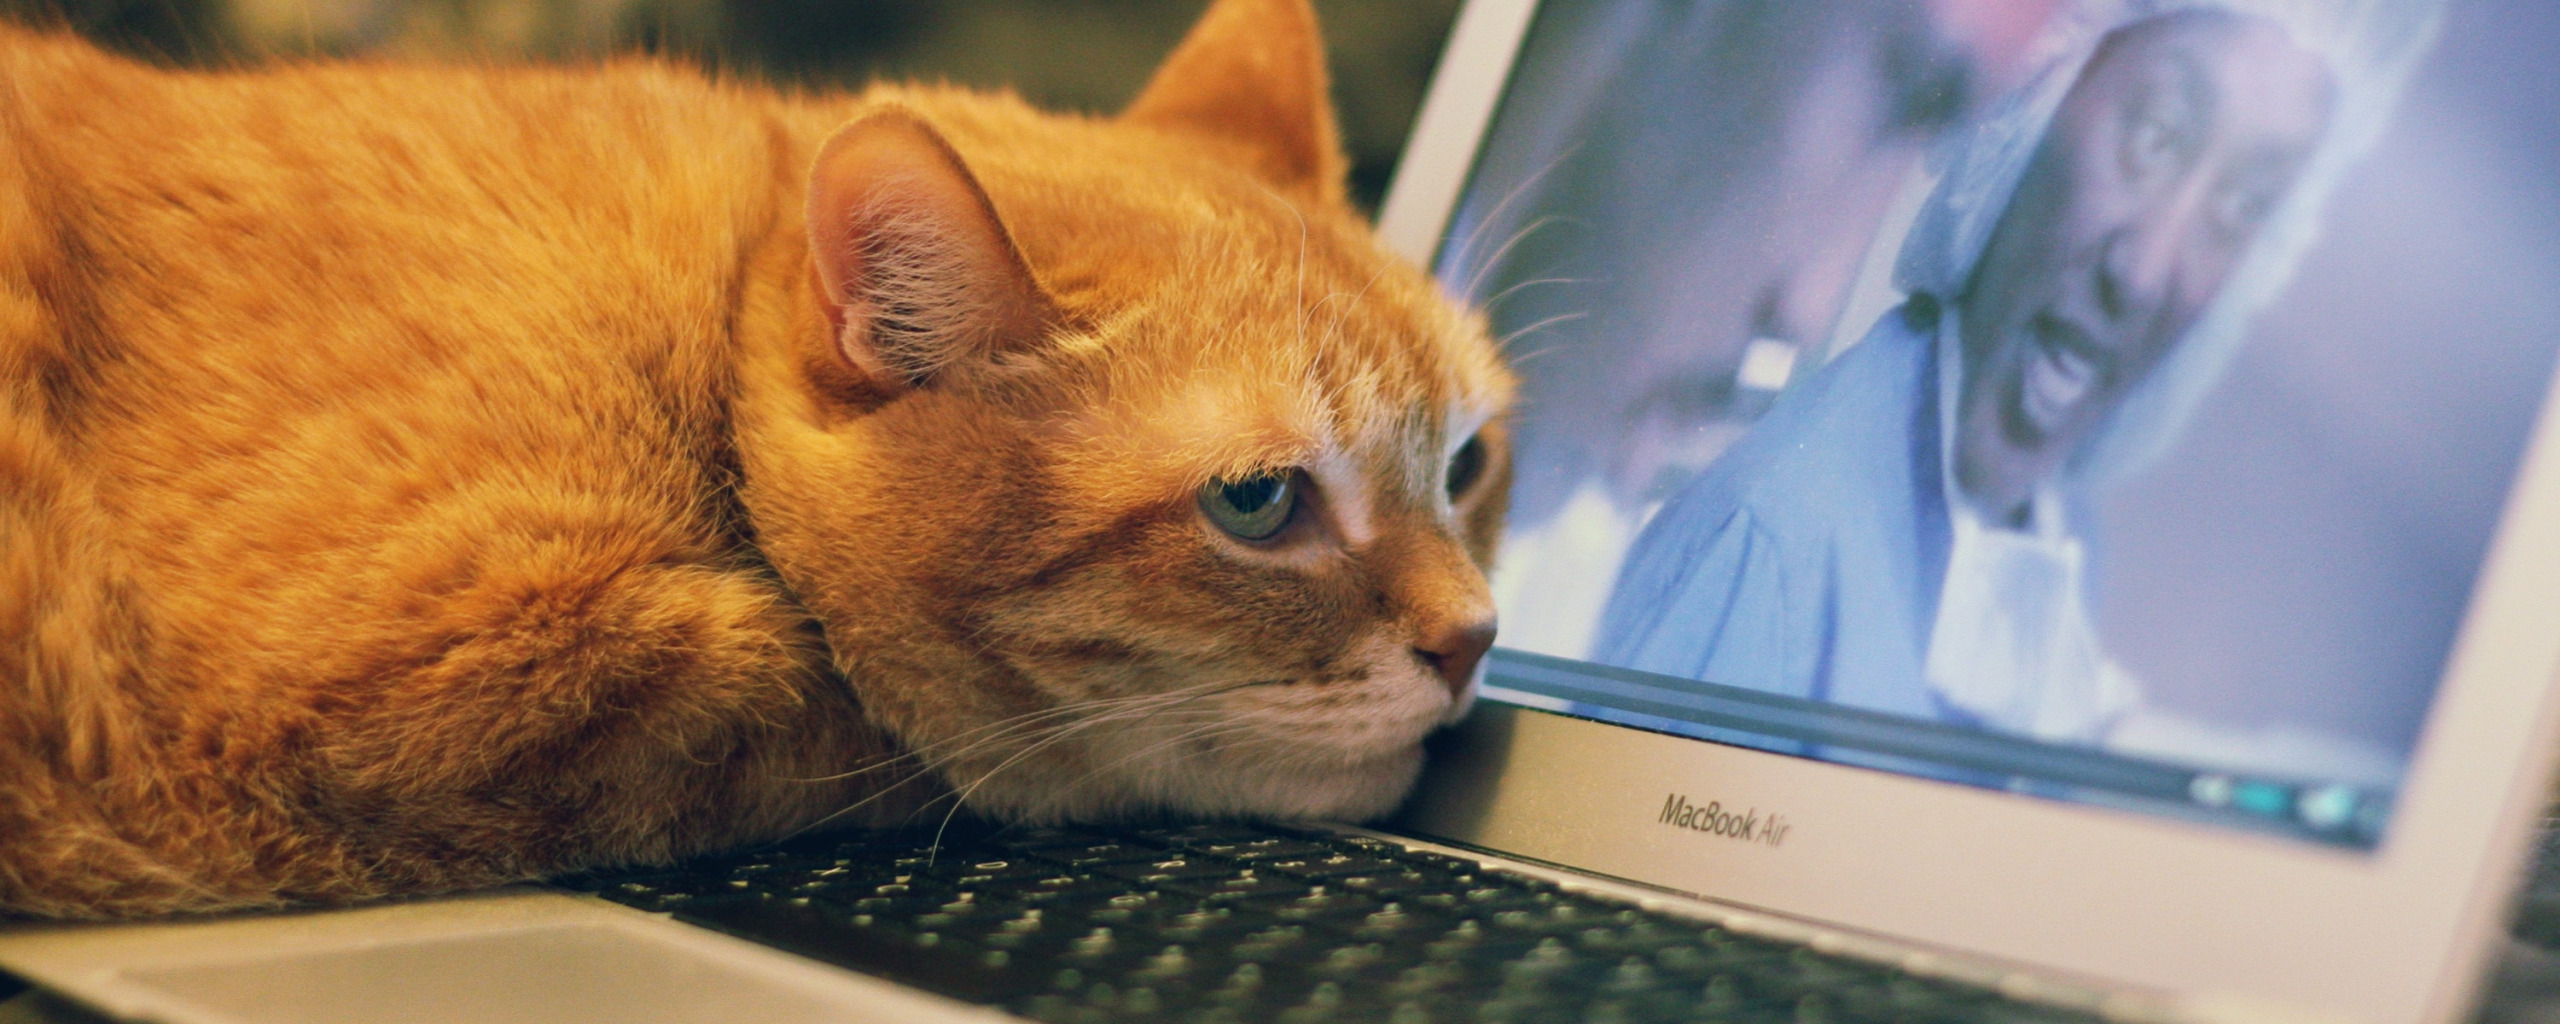 Котик 1 час. Котик за компьютером. Рыжий кот за компьютером. Коты за компом. Кошка и компьютер.